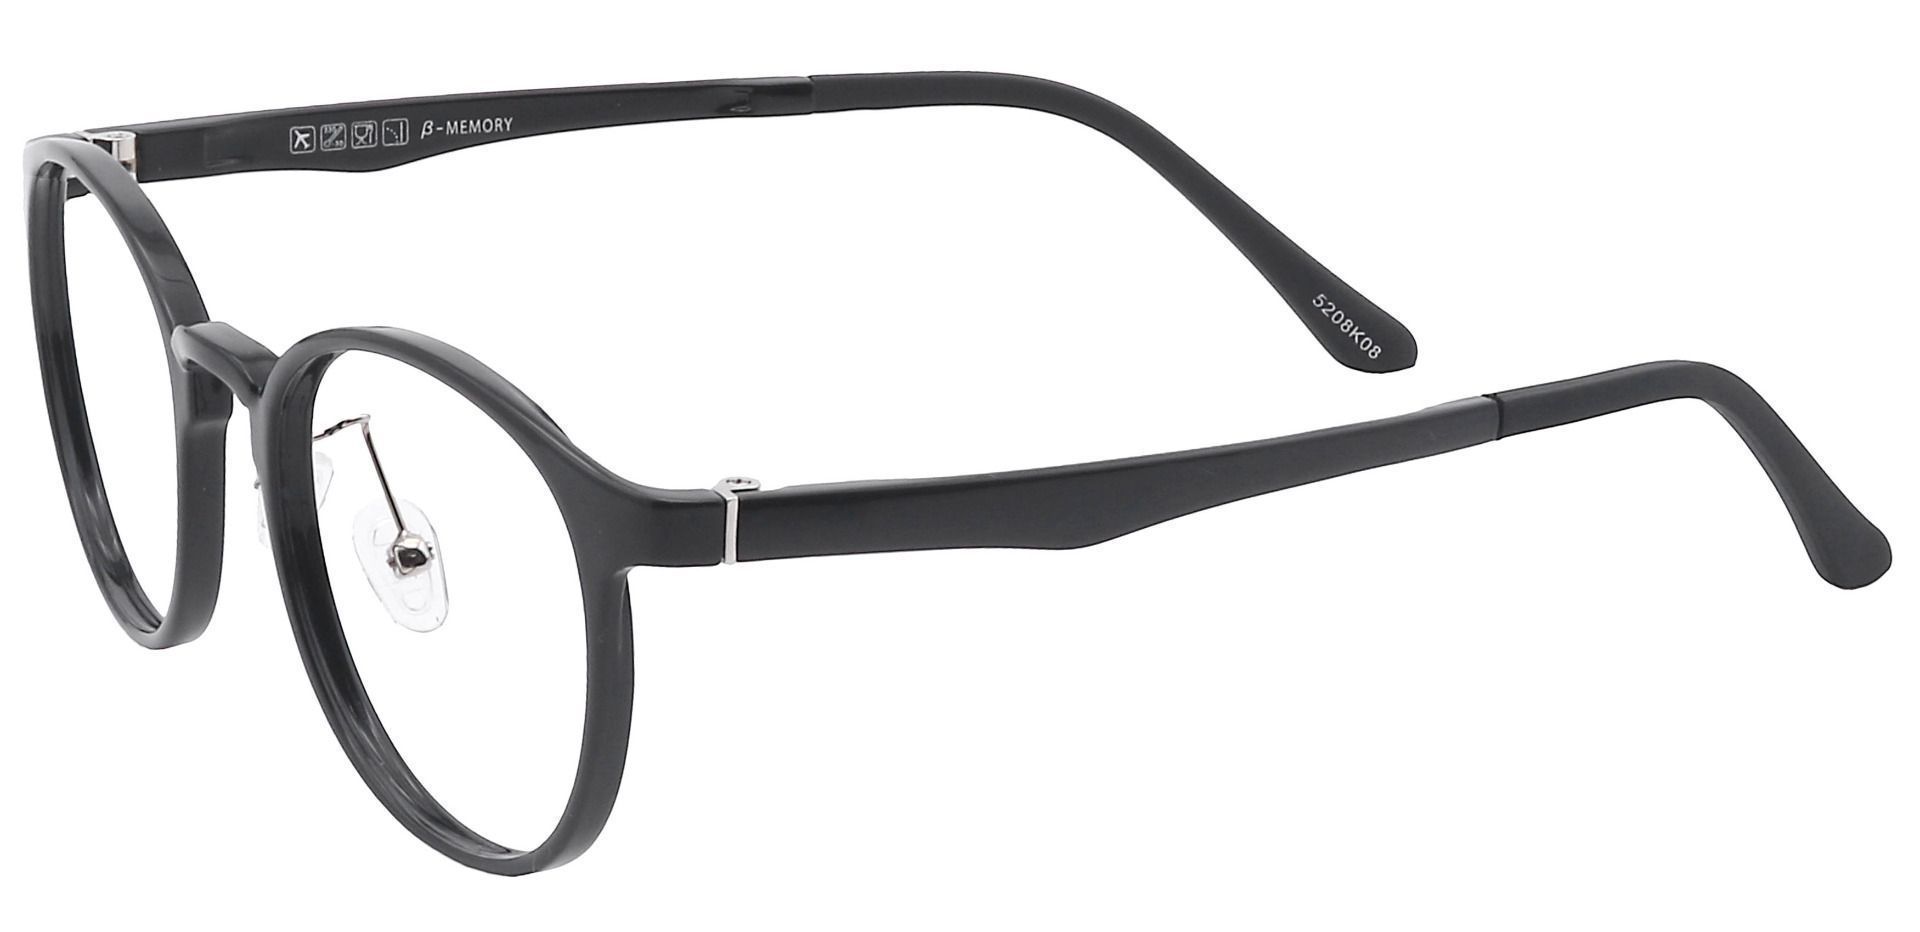 Nimbus Oval Non-Rx Glasses - Black